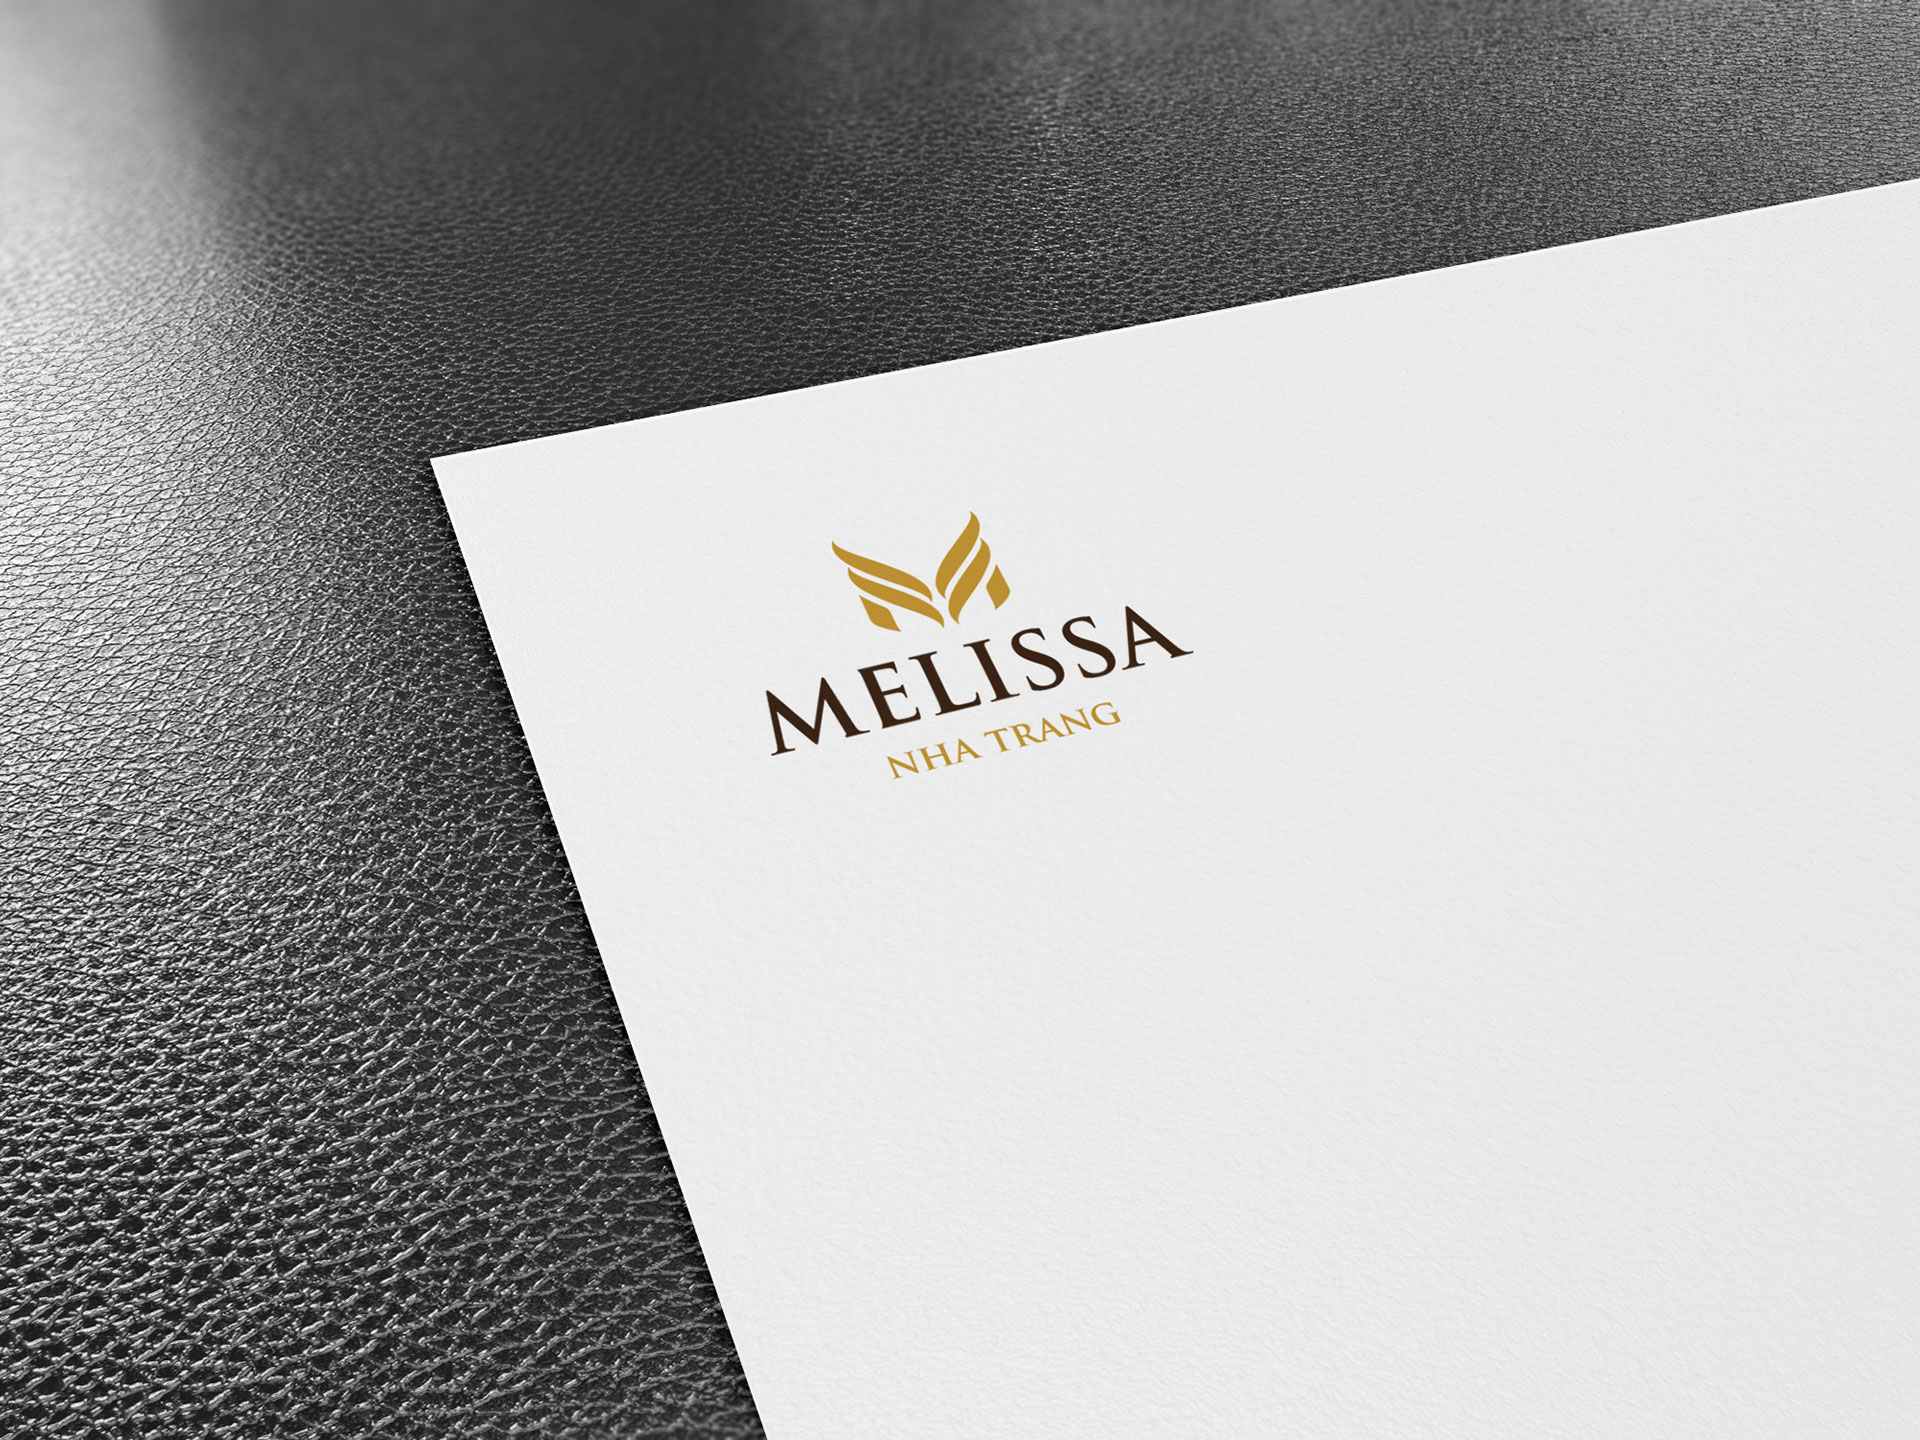 Thiết kế Logo và Bộ nhận diện thương hiệu khách sạn 3 sao Melissa tại Hà Nội